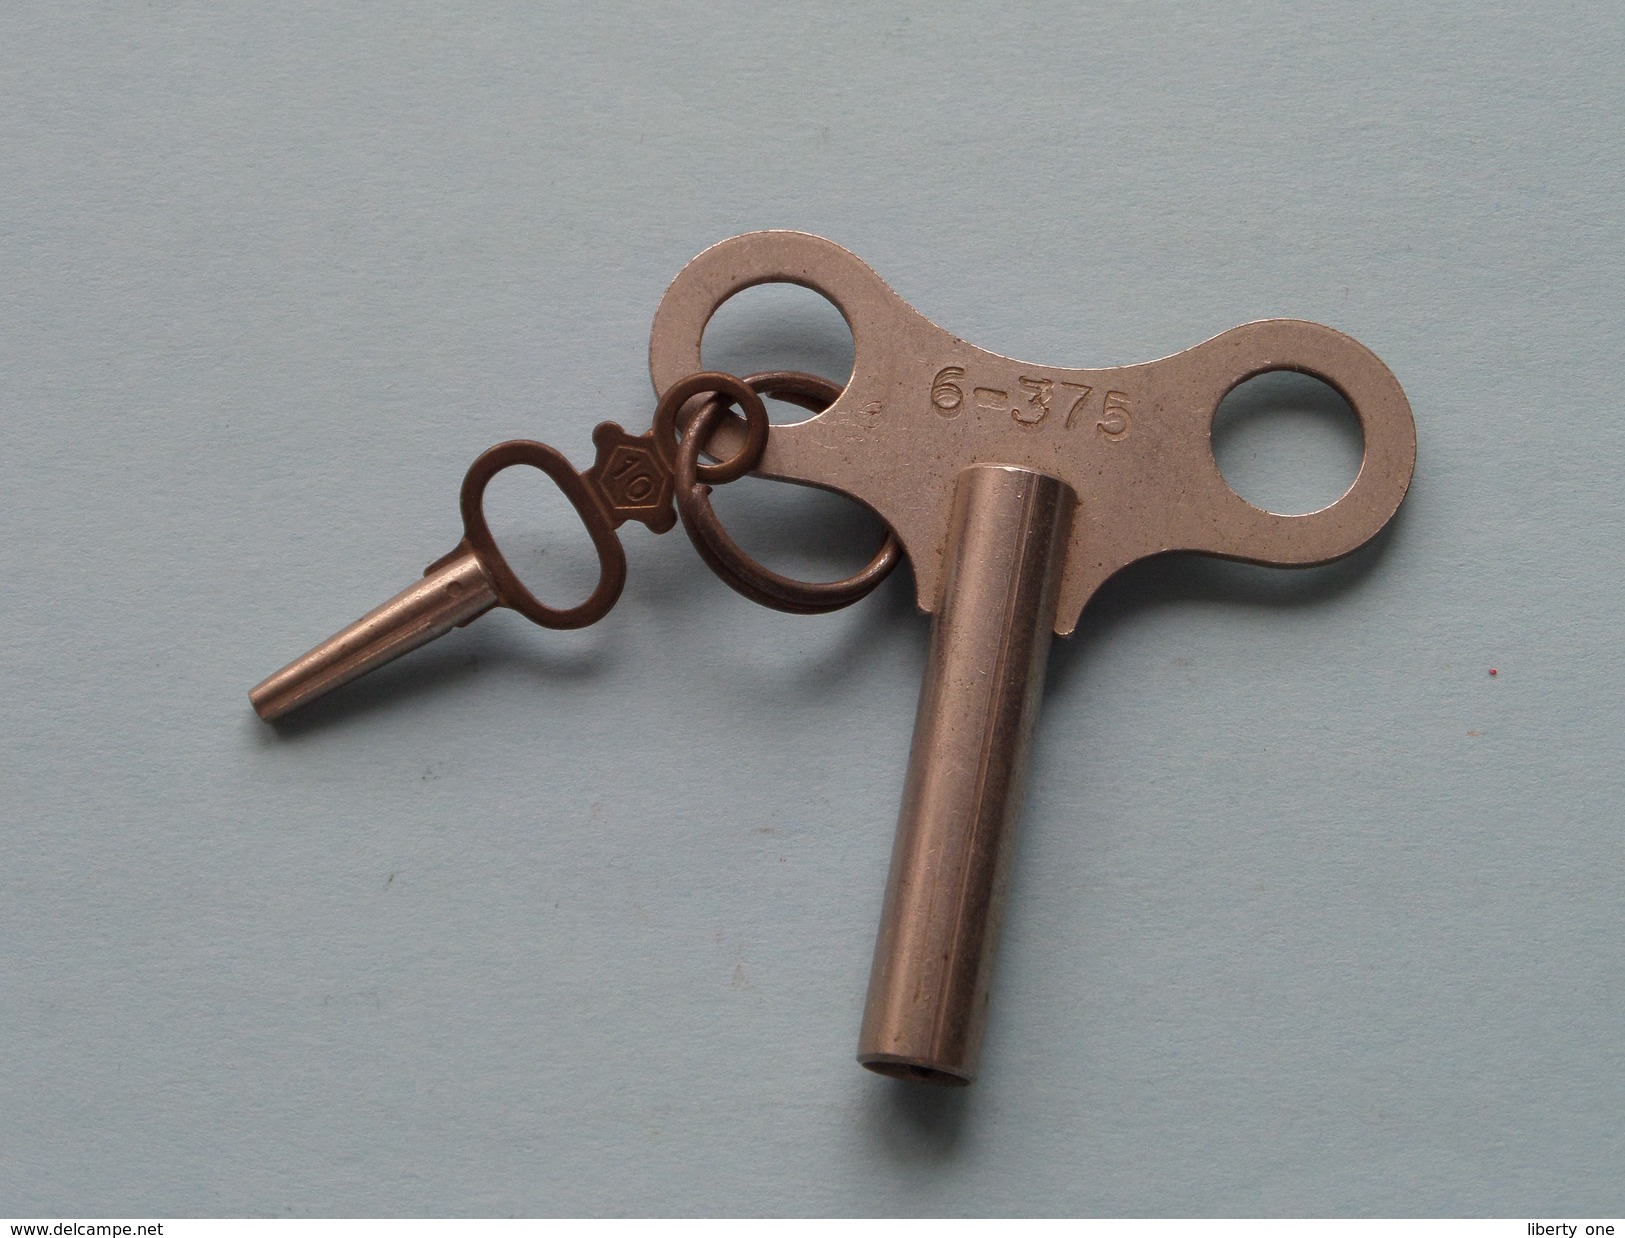 Key / Sleutel Voor Klok / Horloge ( 6-375 ) With Small Key N° 10 ( Metal - Zie Foto Details ) !! - Cloches